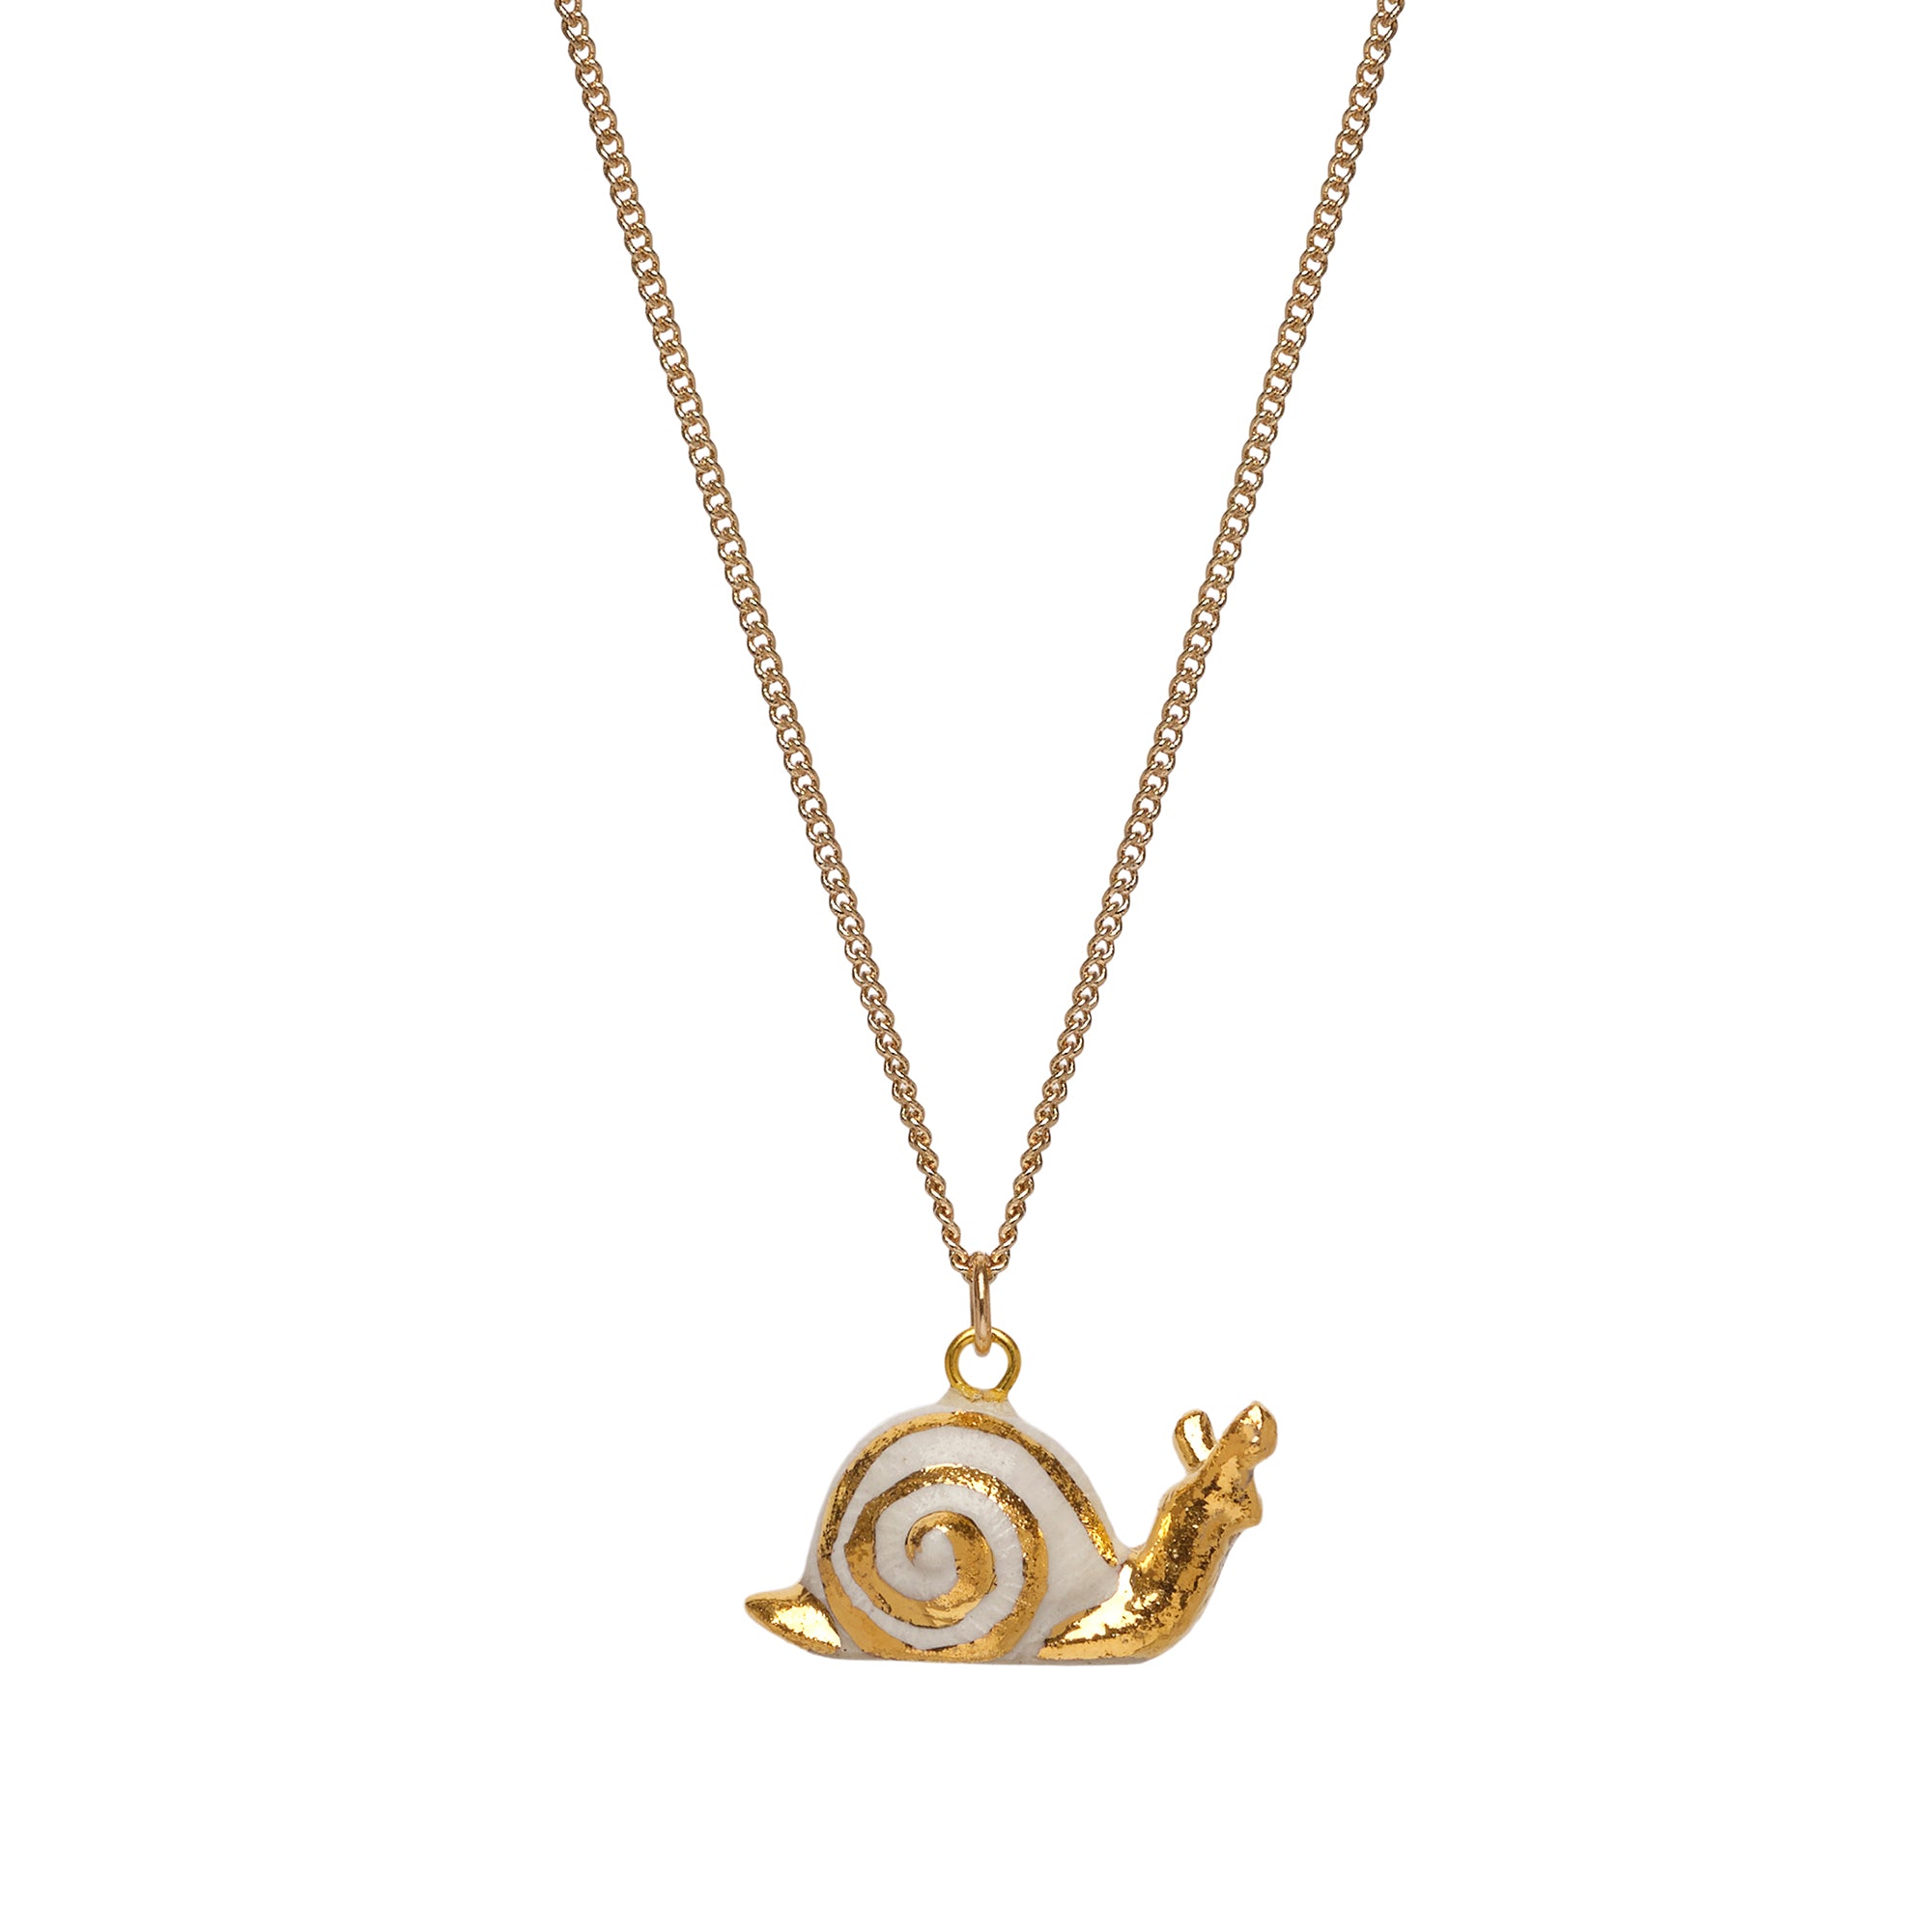 Tiny Bright Golden Snail Necklace